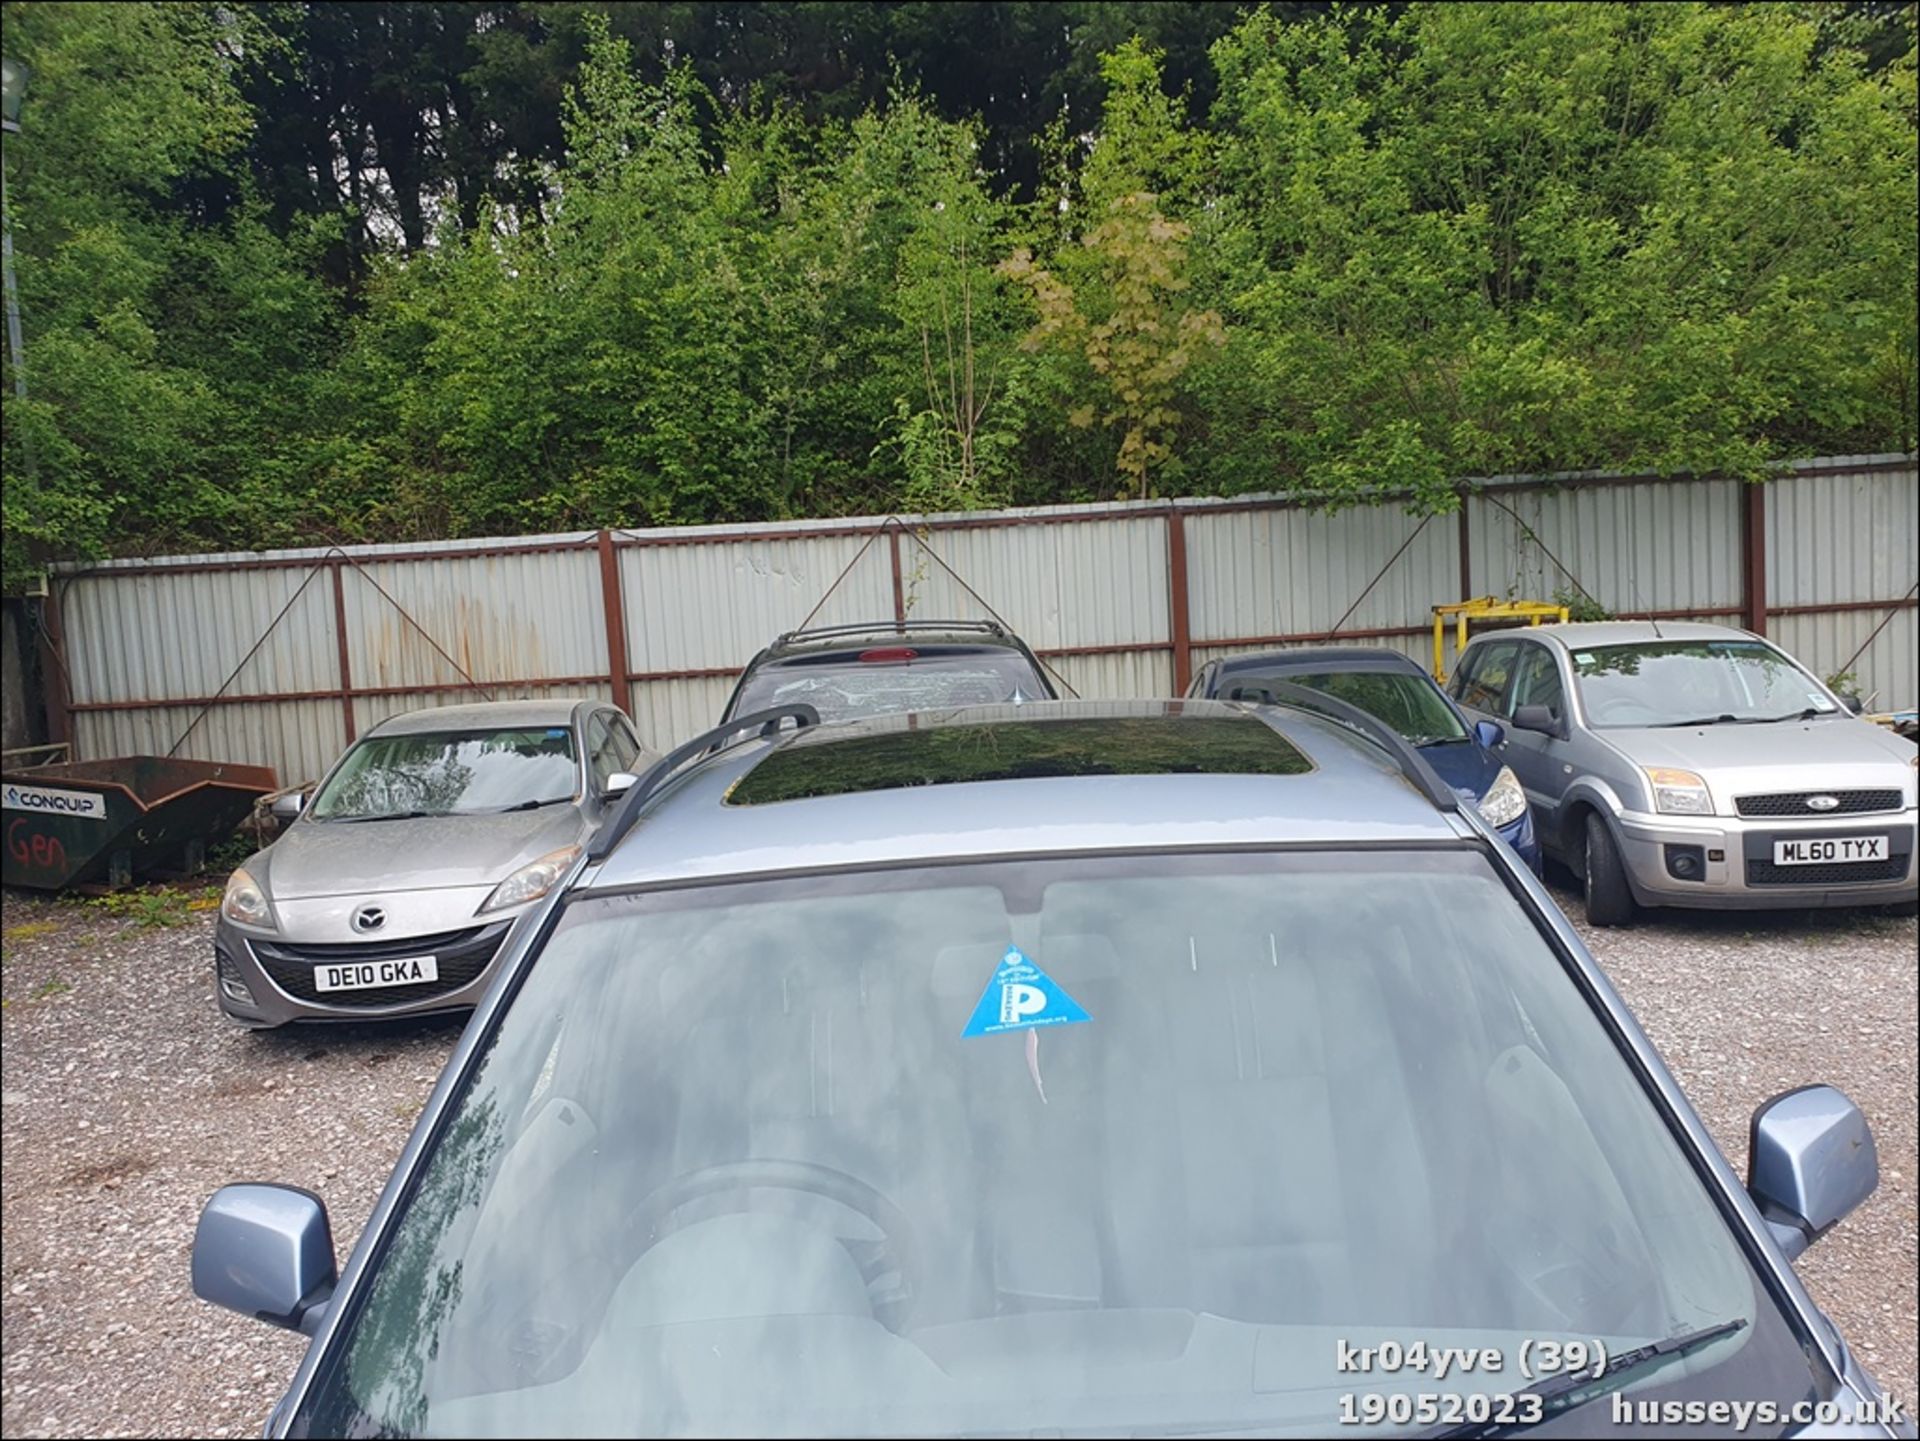 04/04 BMW X3 SE - 2494cc 5dr Estate (Blue, 147k) - Image 39 of 39